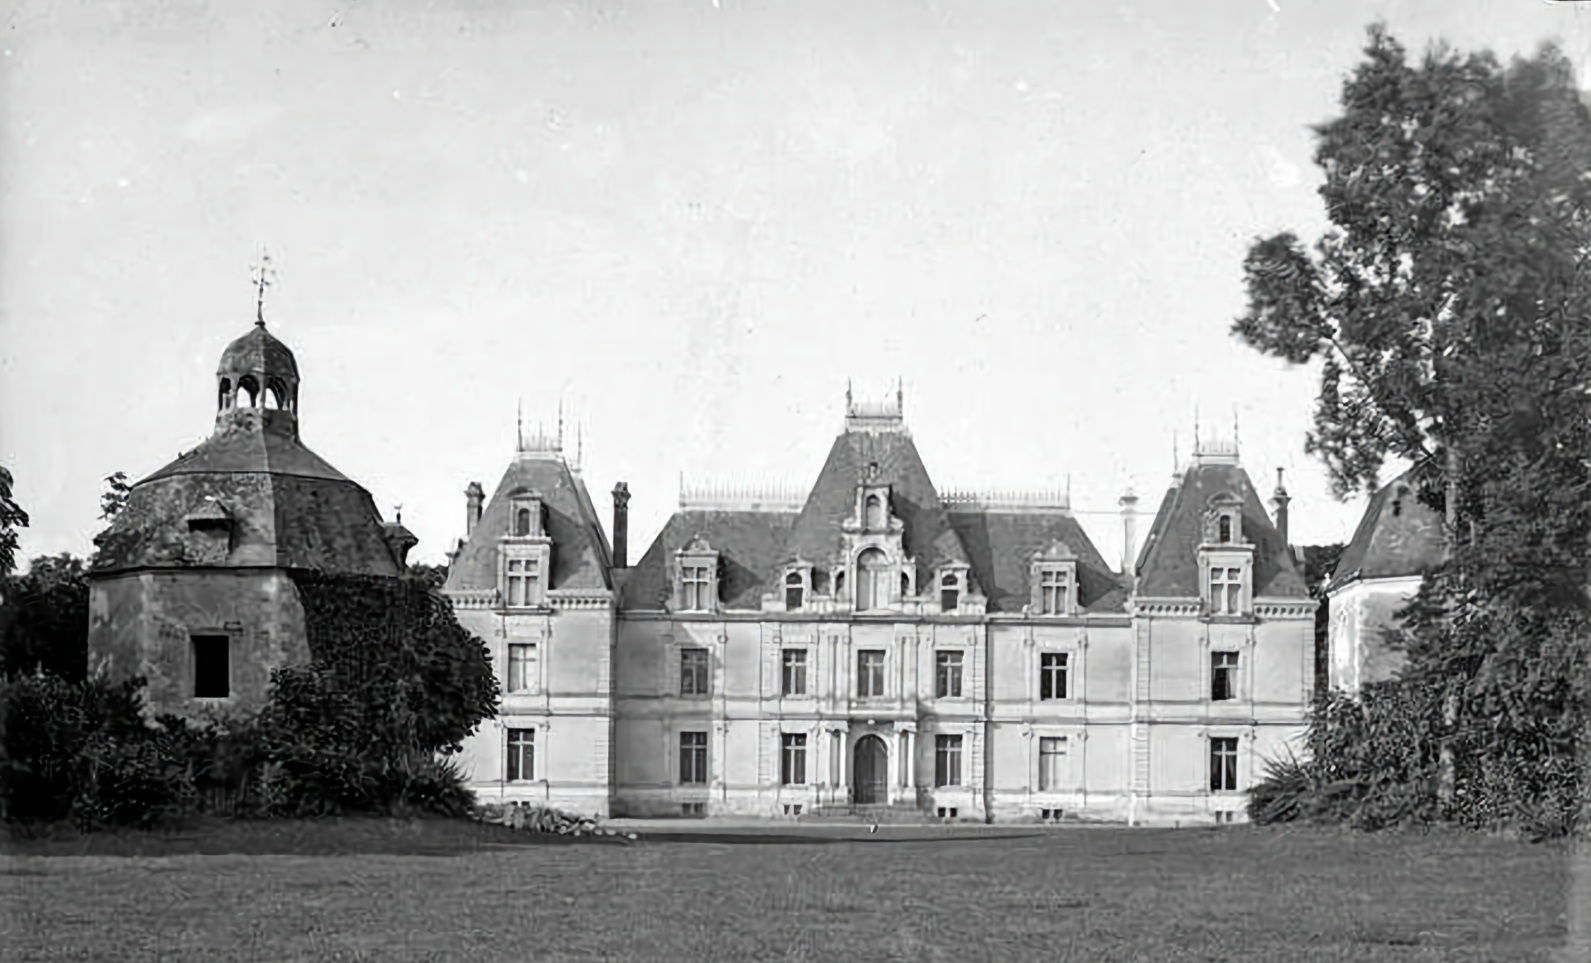 L’Histoire du Château de Maubreuil, premier 5 étoiles de la région nantaise